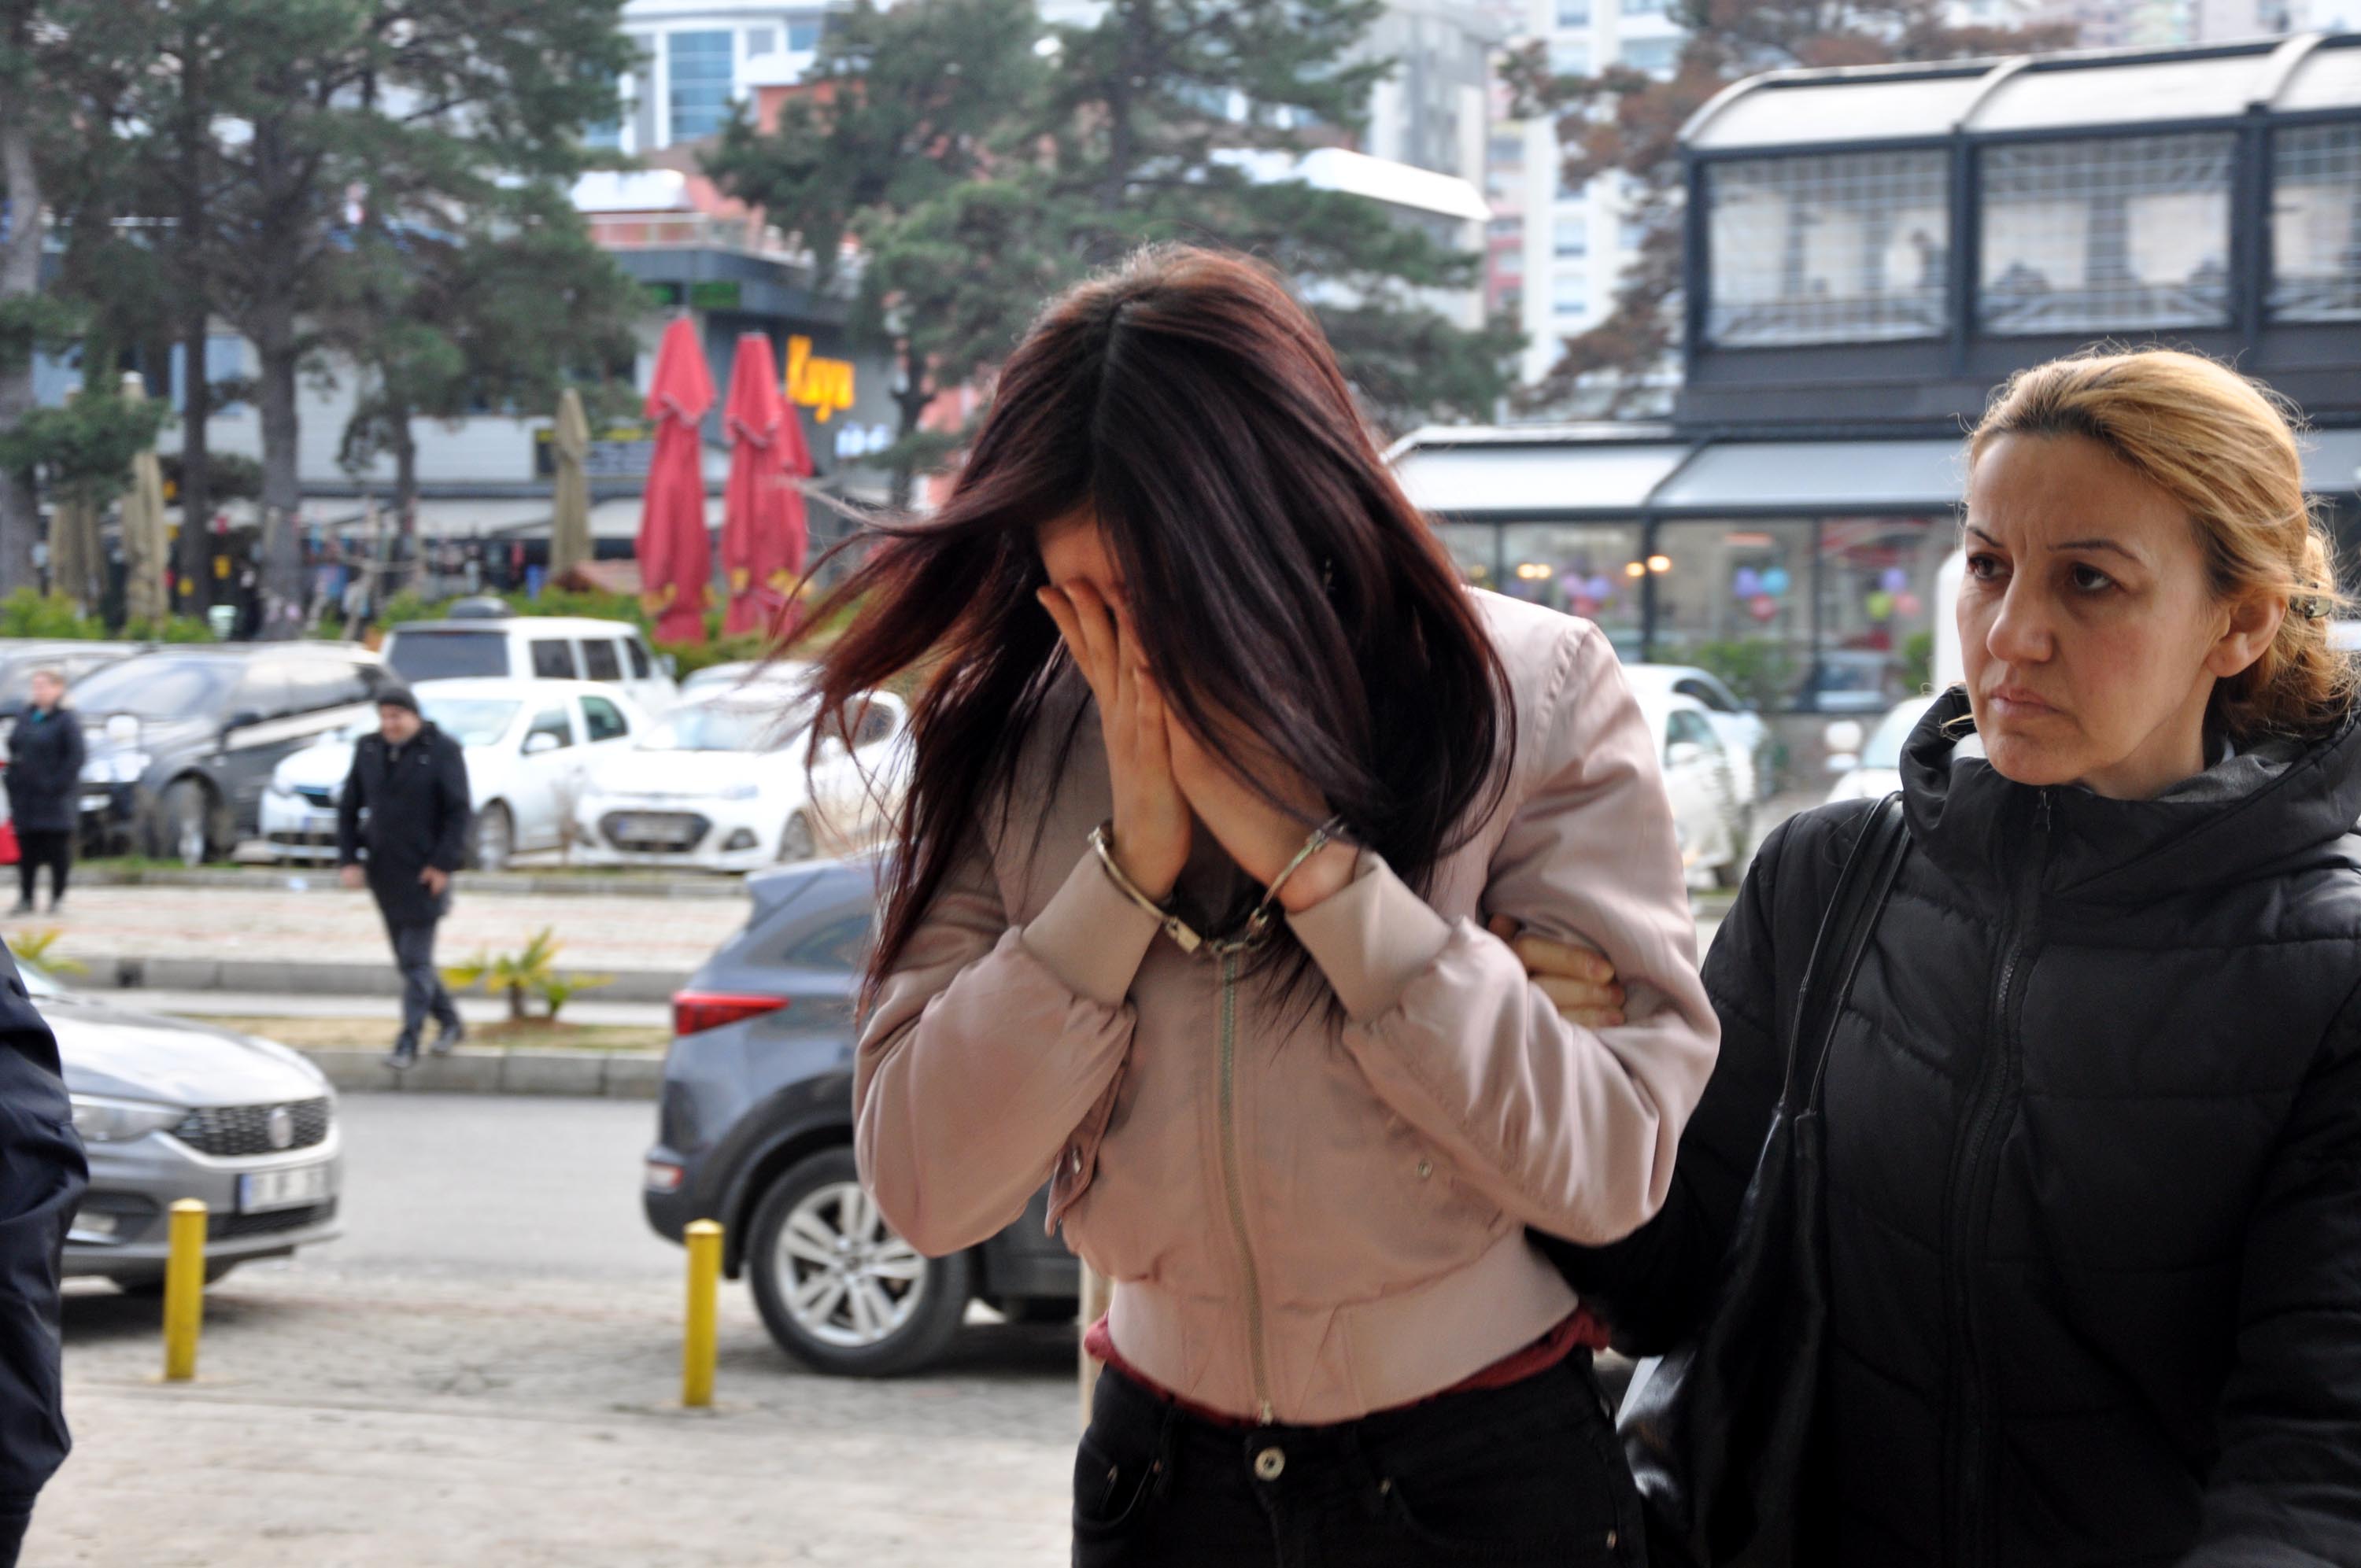 İşkenceyle suçlanan üniversiteli kızlar için karar açıklandı